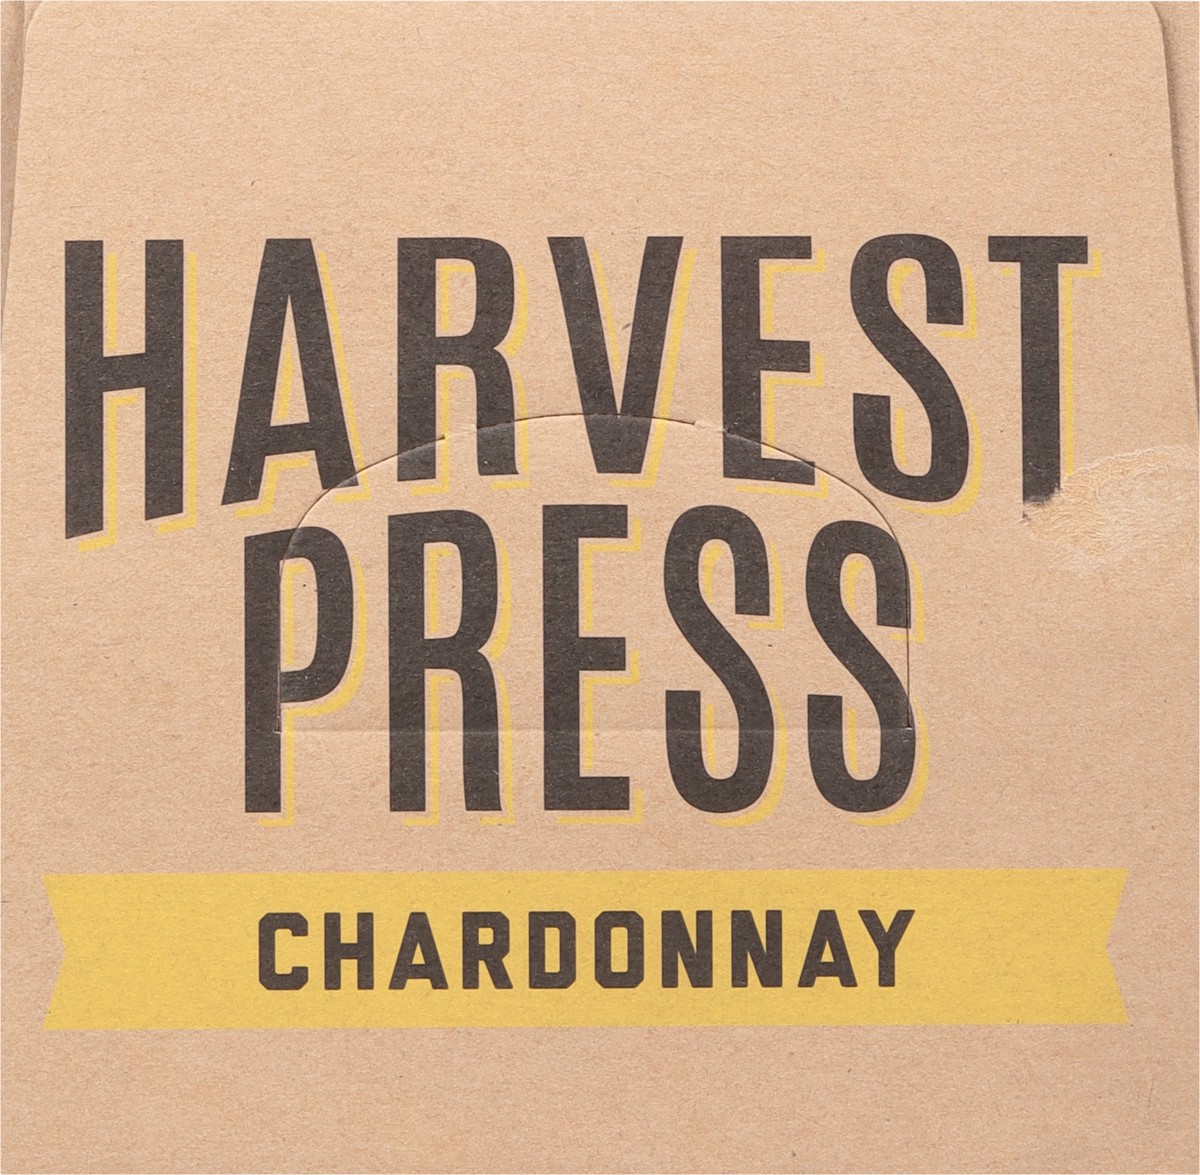 slide 4 of 9, Harvest Press Chardonnay 3 l, 3 liter